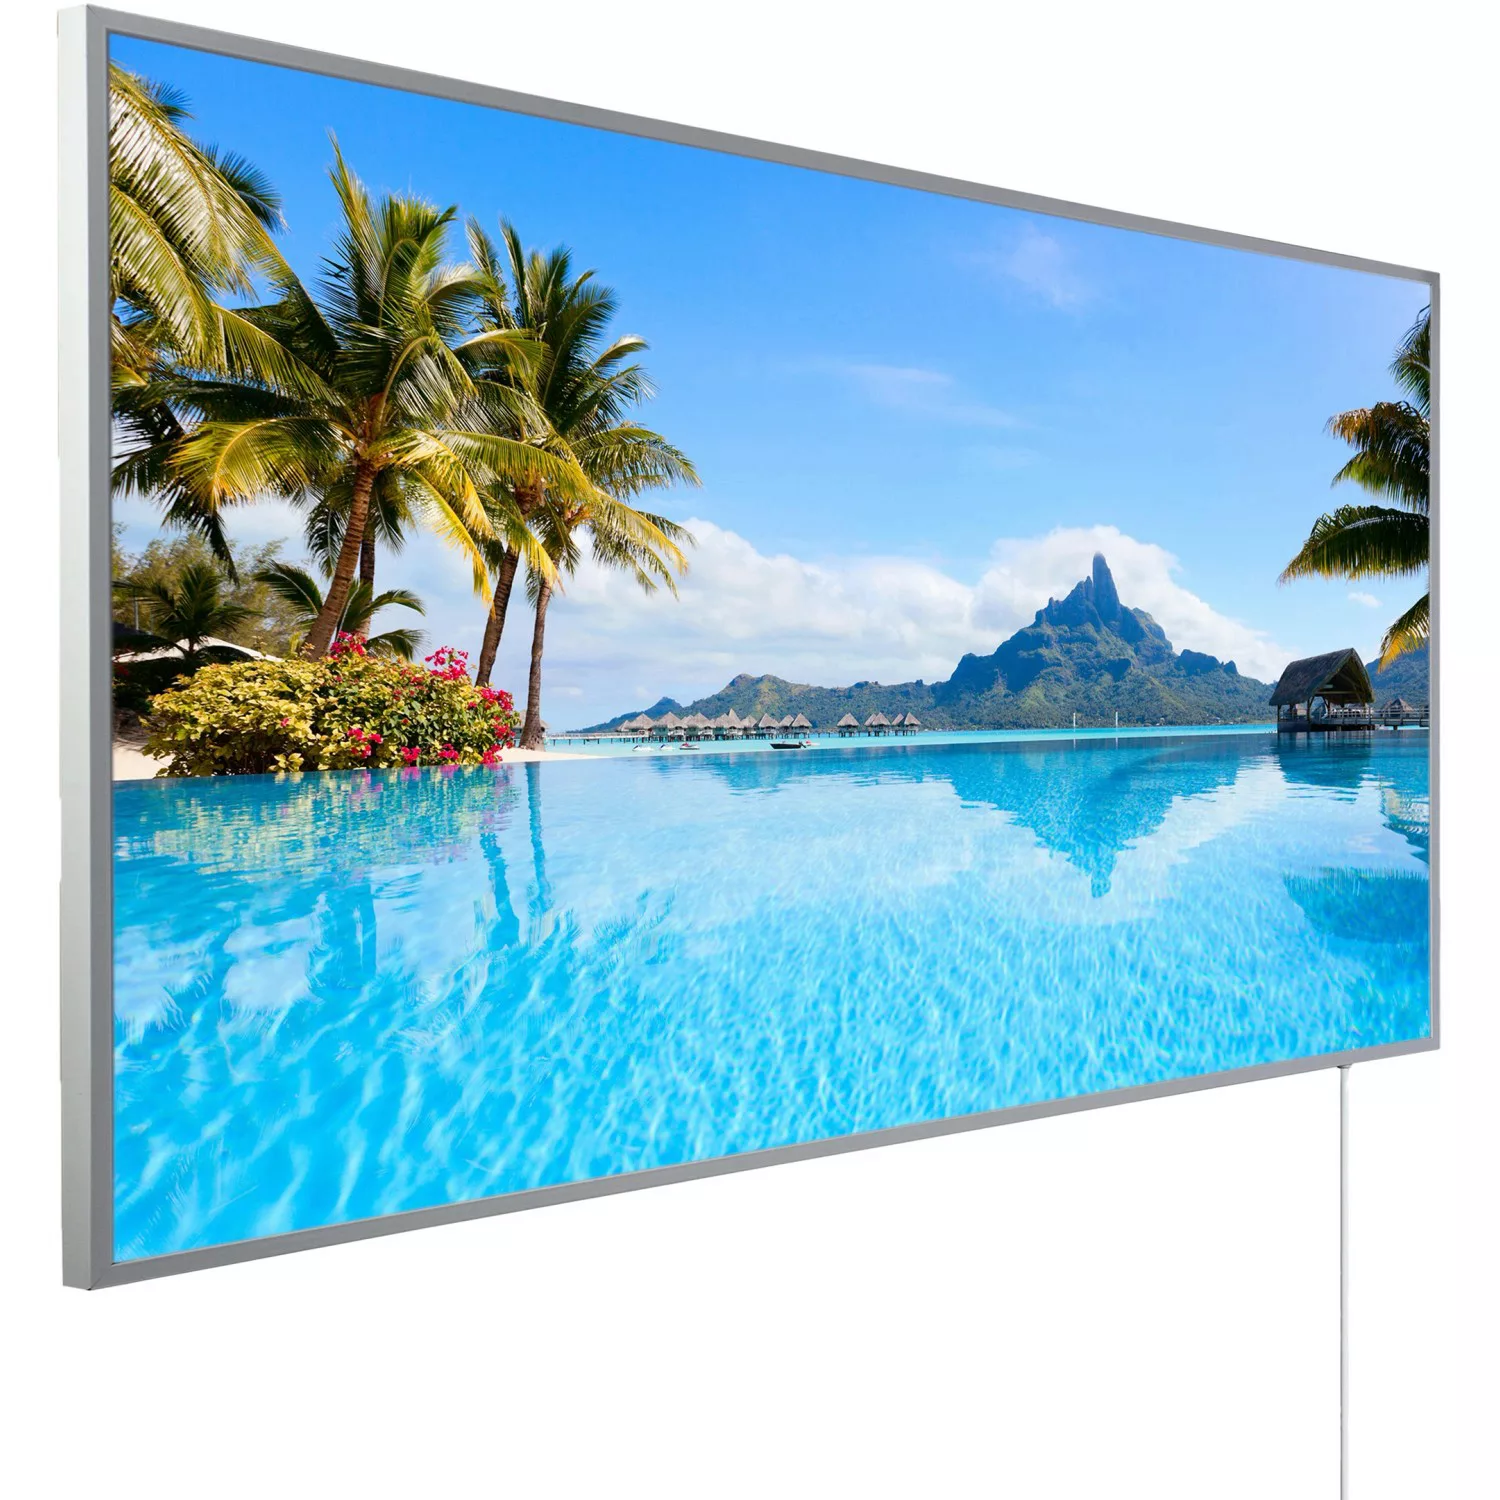 Könighaus Infrarotheizung Panorama-Serie 60 cm x 120 cm 1200 W Bora Bora In günstig online kaufen